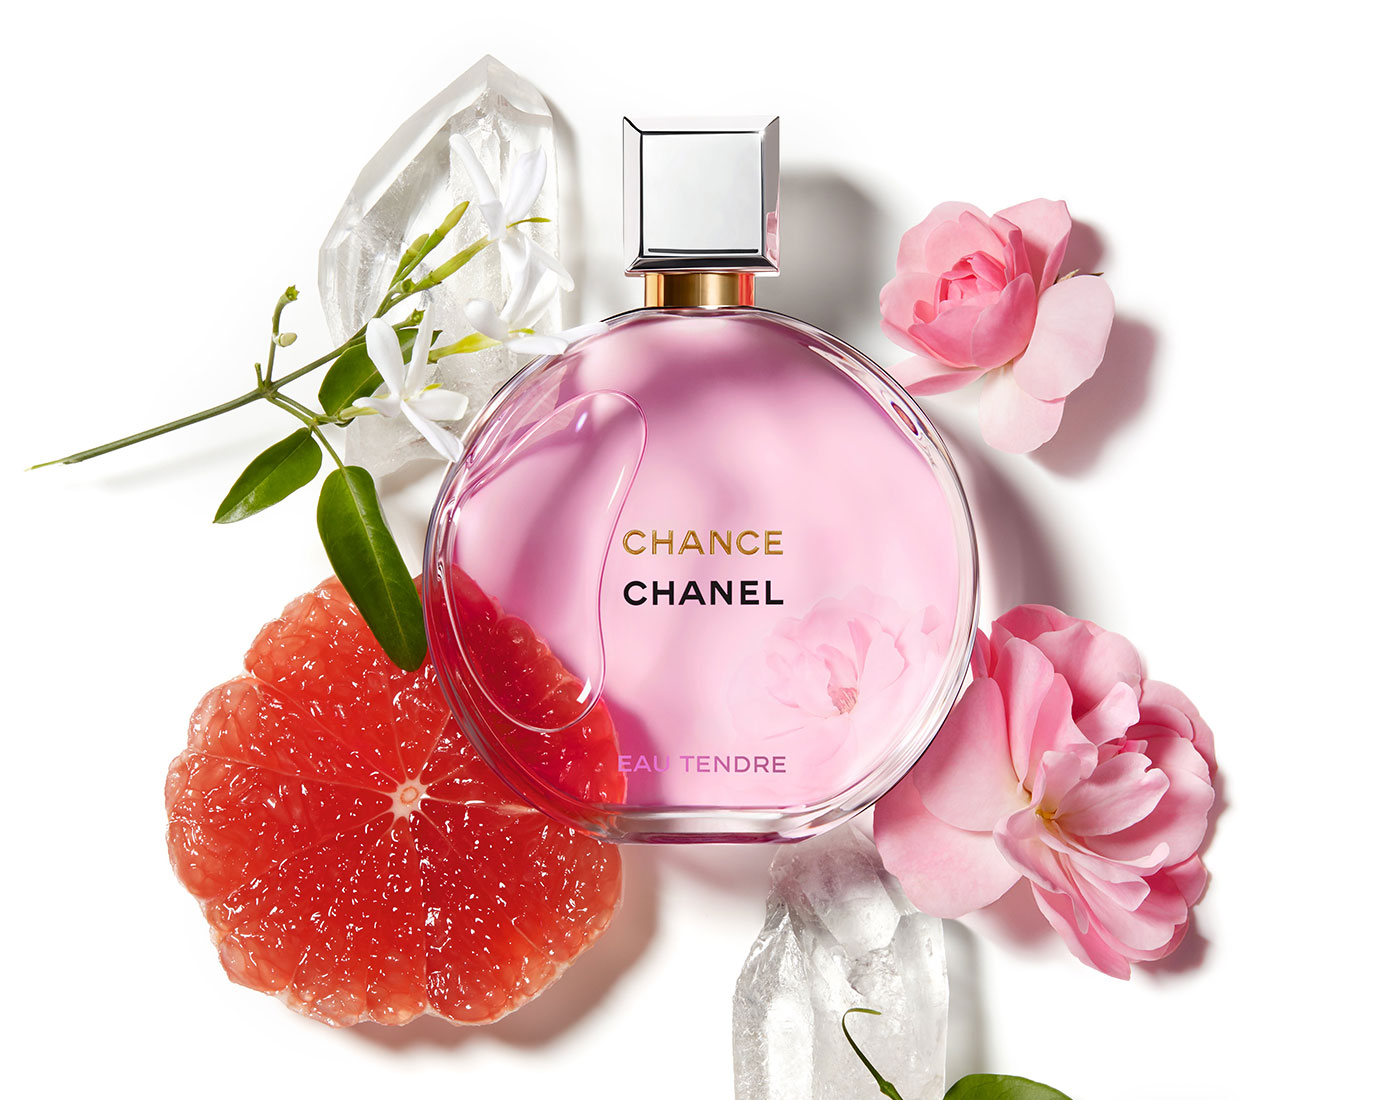 Olfactorum: Chance Eau Tendre Eau de Parfum - Chanel 2019 : tendres